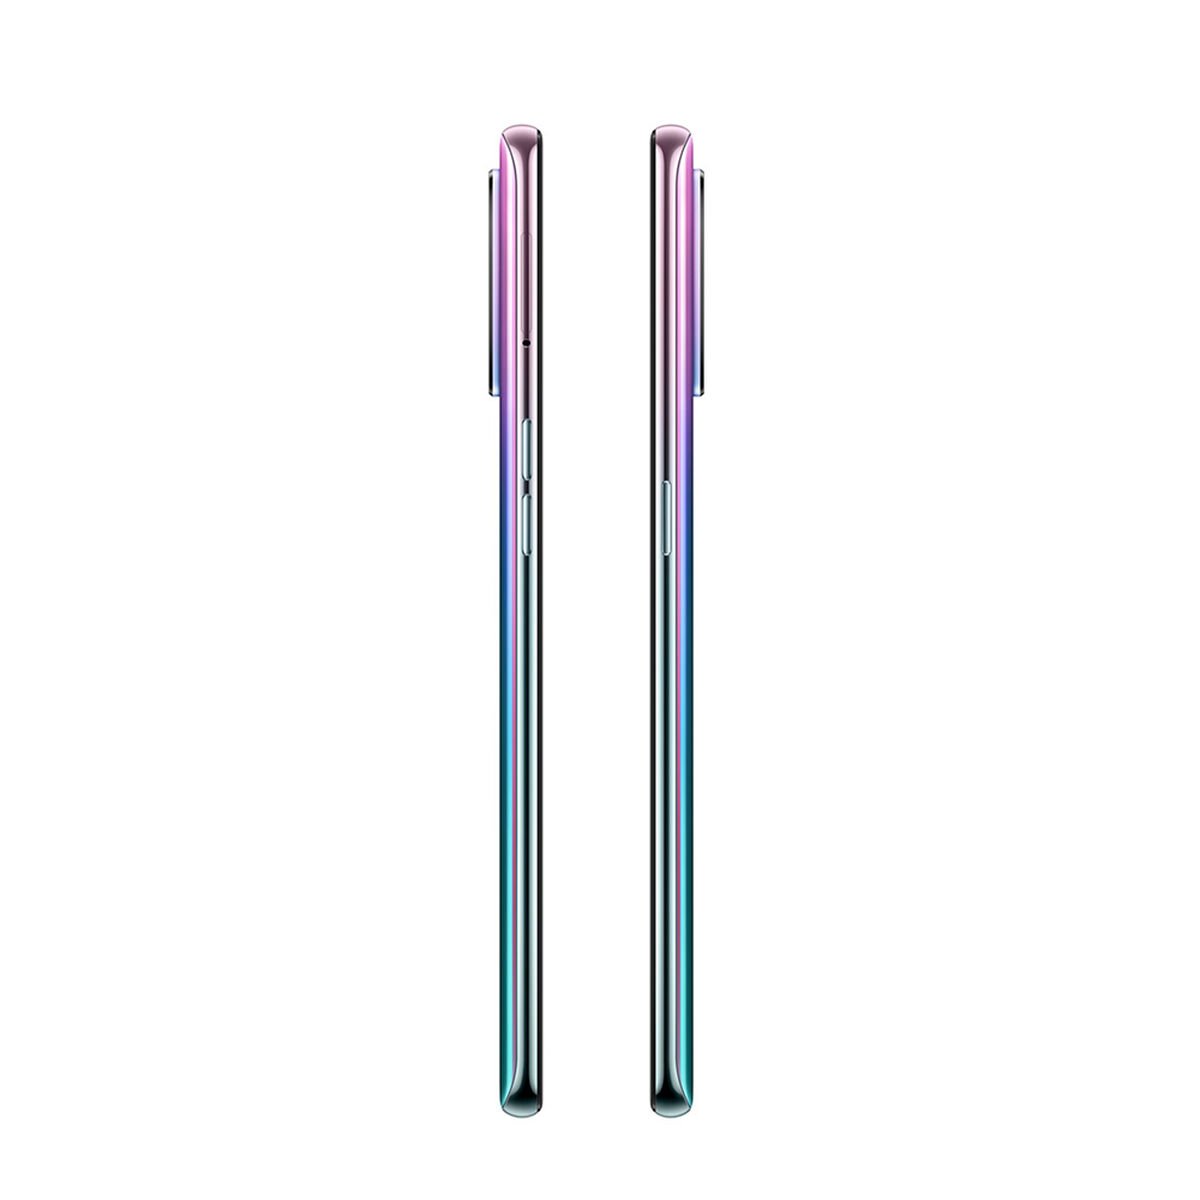 Celular Oppo Reno5 Lite 128GB 6,43" Fantastic Purple Liberado